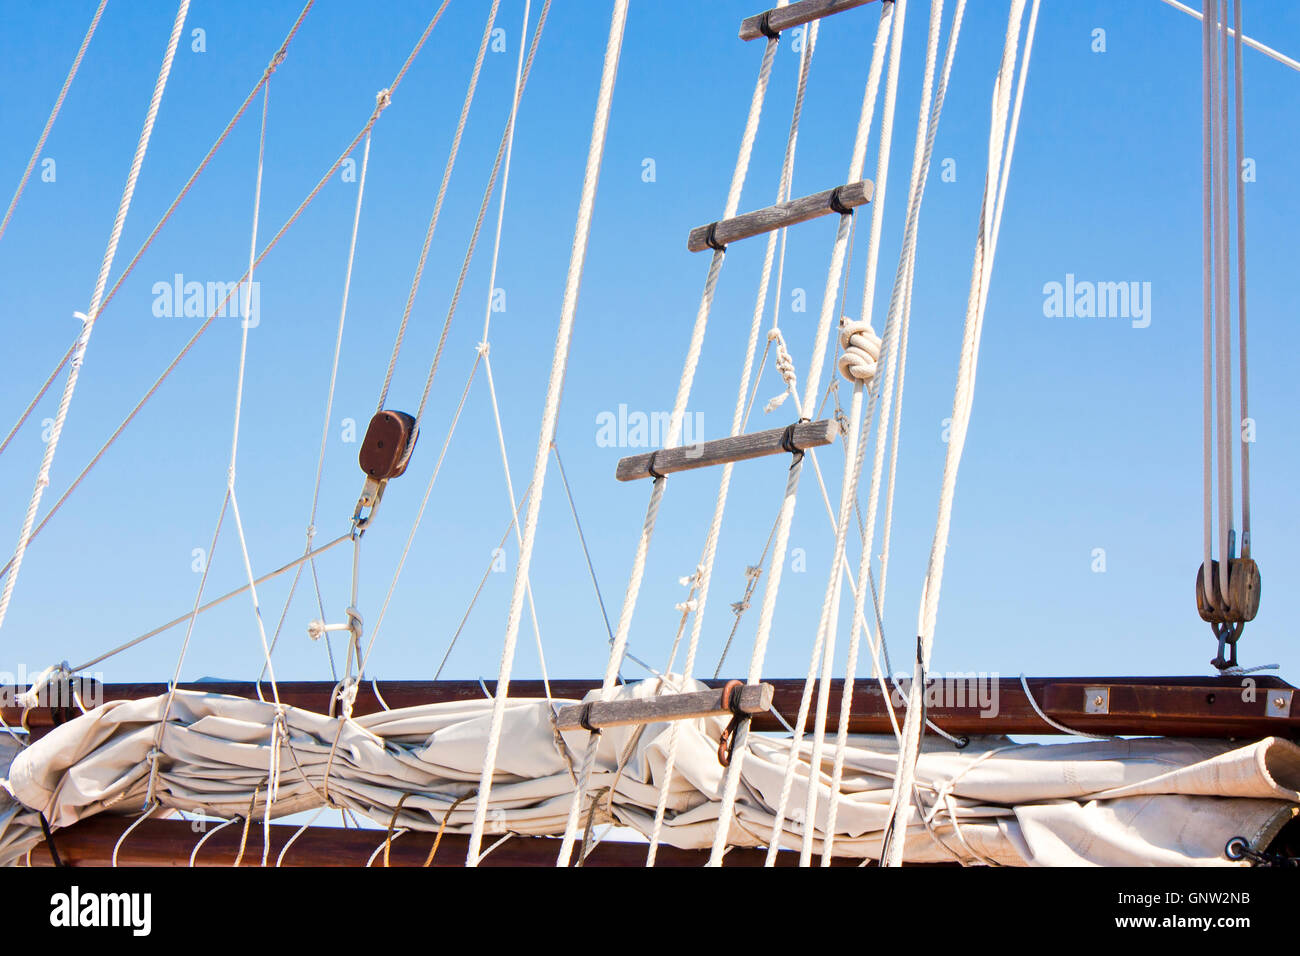 Détail d'un ancien voilier voile enroulée, flèche, gréement et échelle de corde contre le ciel bleu Banque D'Images